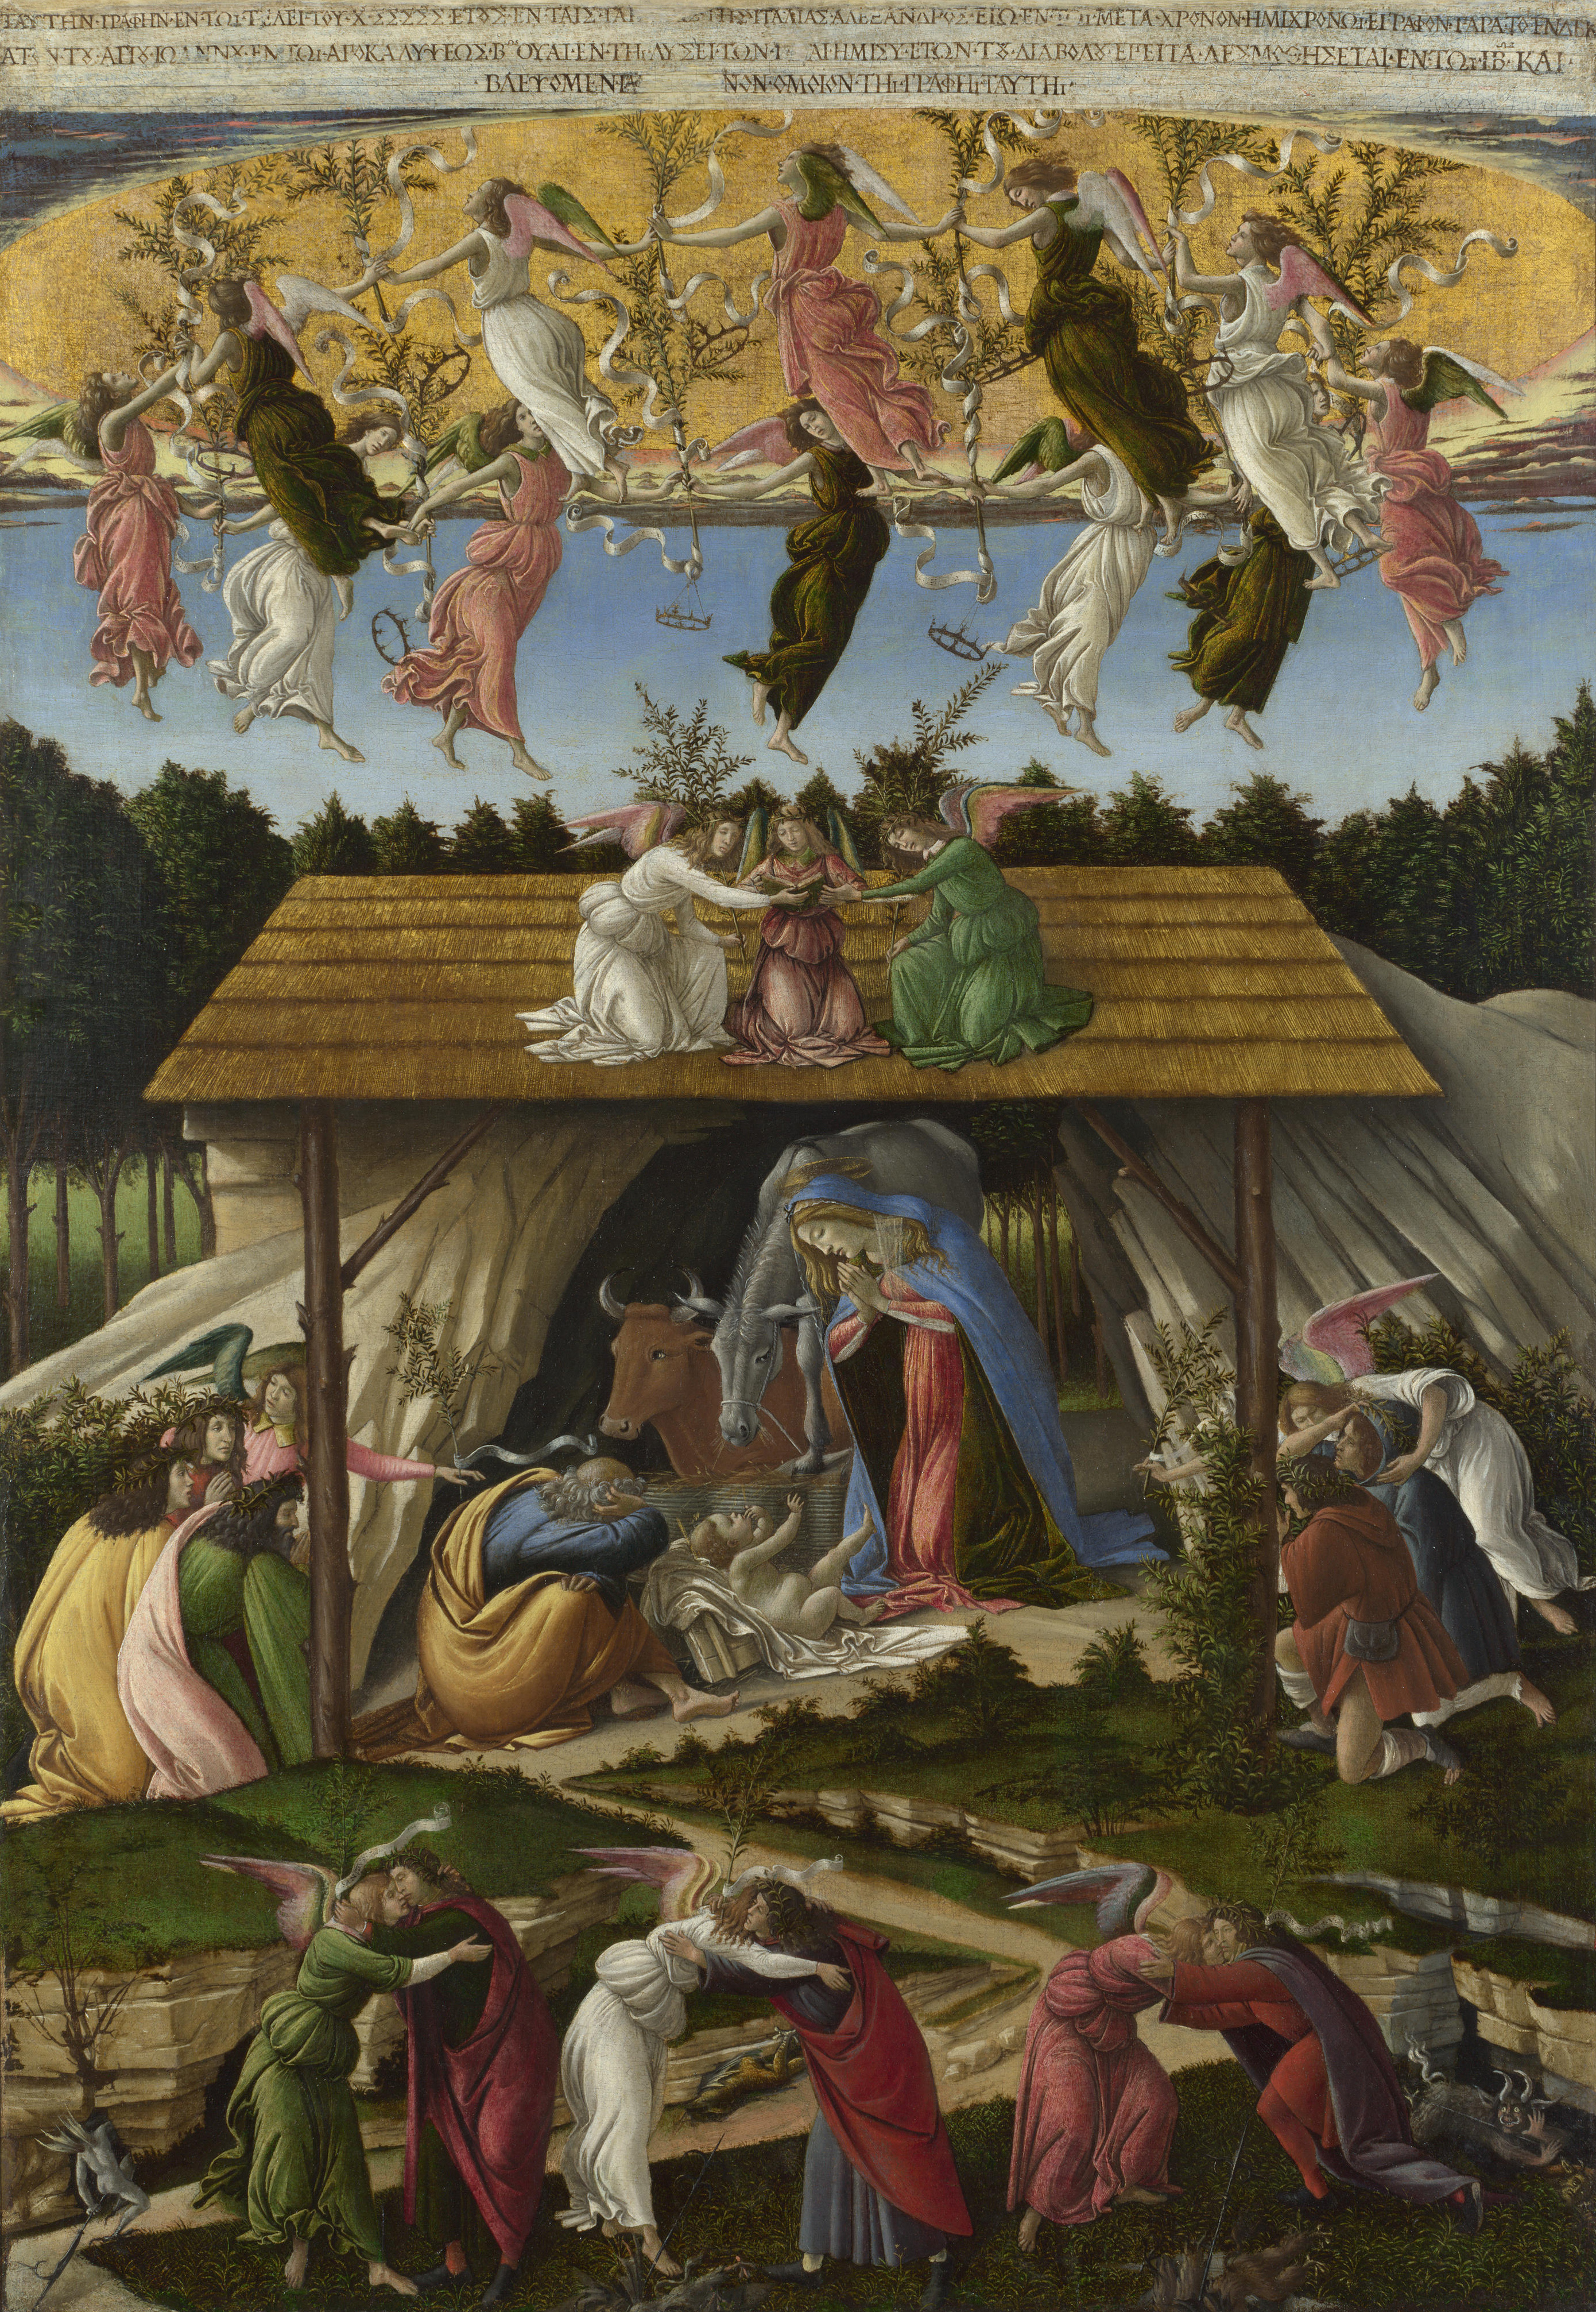 Nativitatea mistică by Sandro Botticelli - 1501 - 108.6 x 74.9 cm 